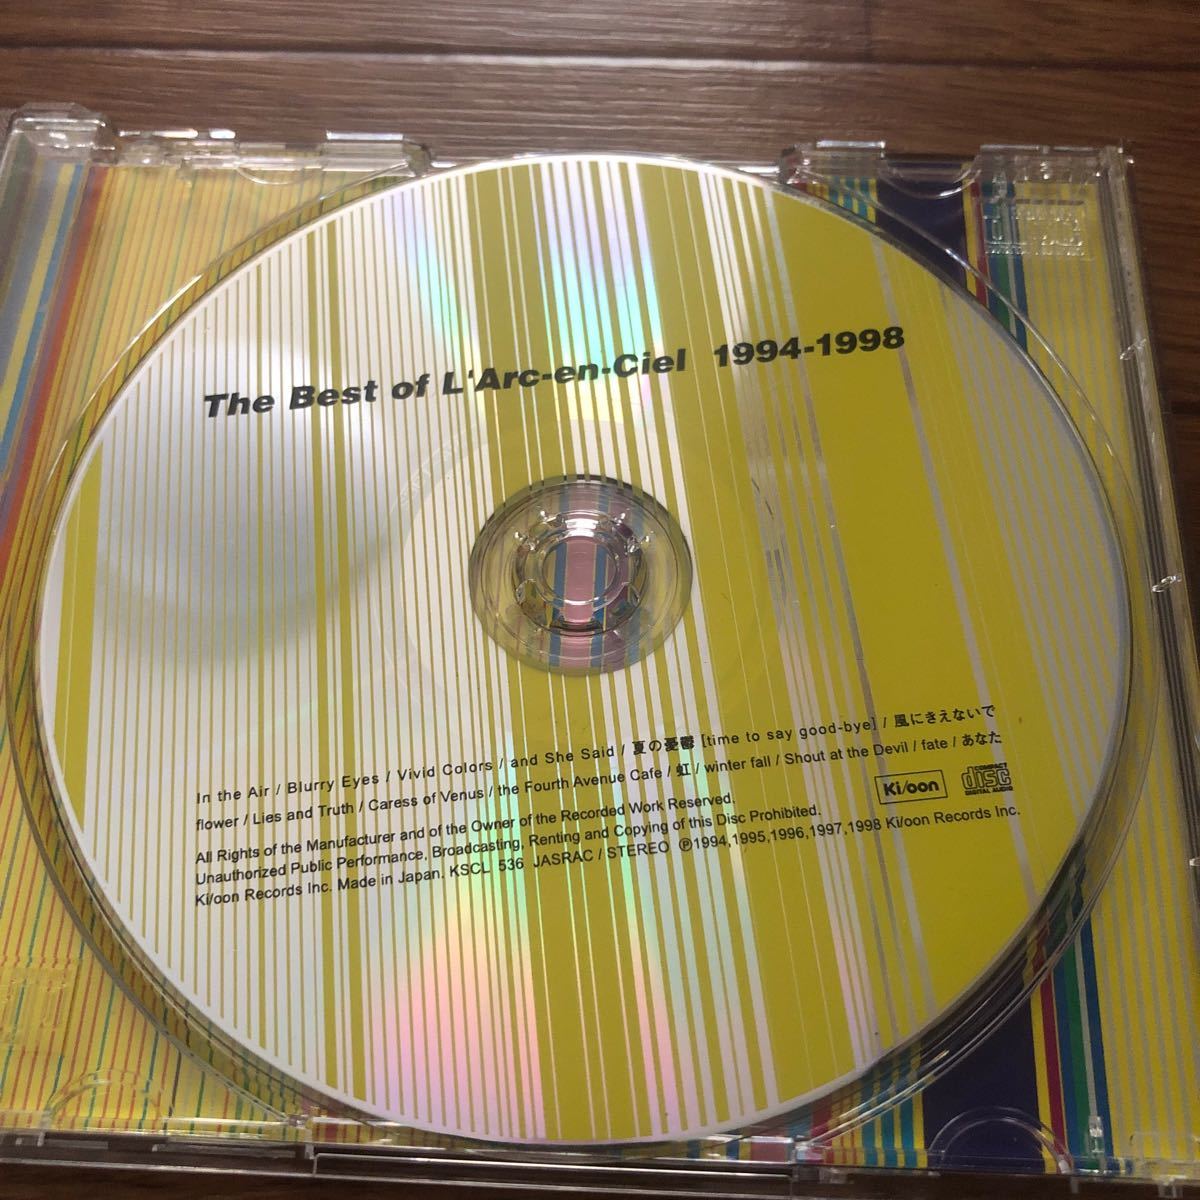 The Best of LArc~en~Ciel 1994-1998 